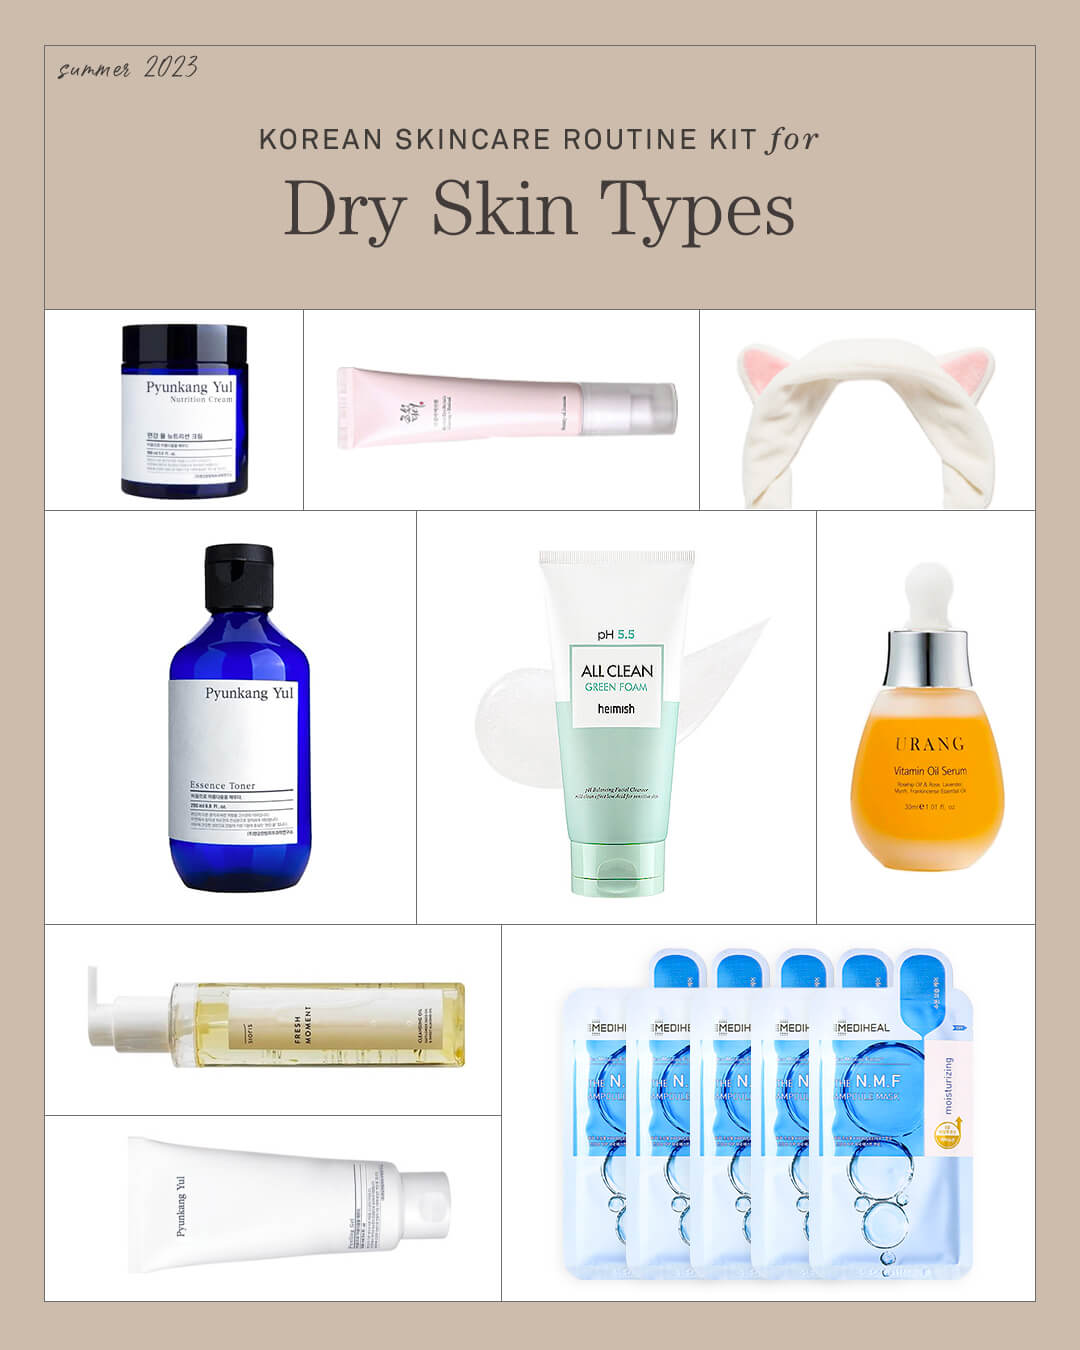 Ohlolly Korean Skincare Kit for Dry Skin Types